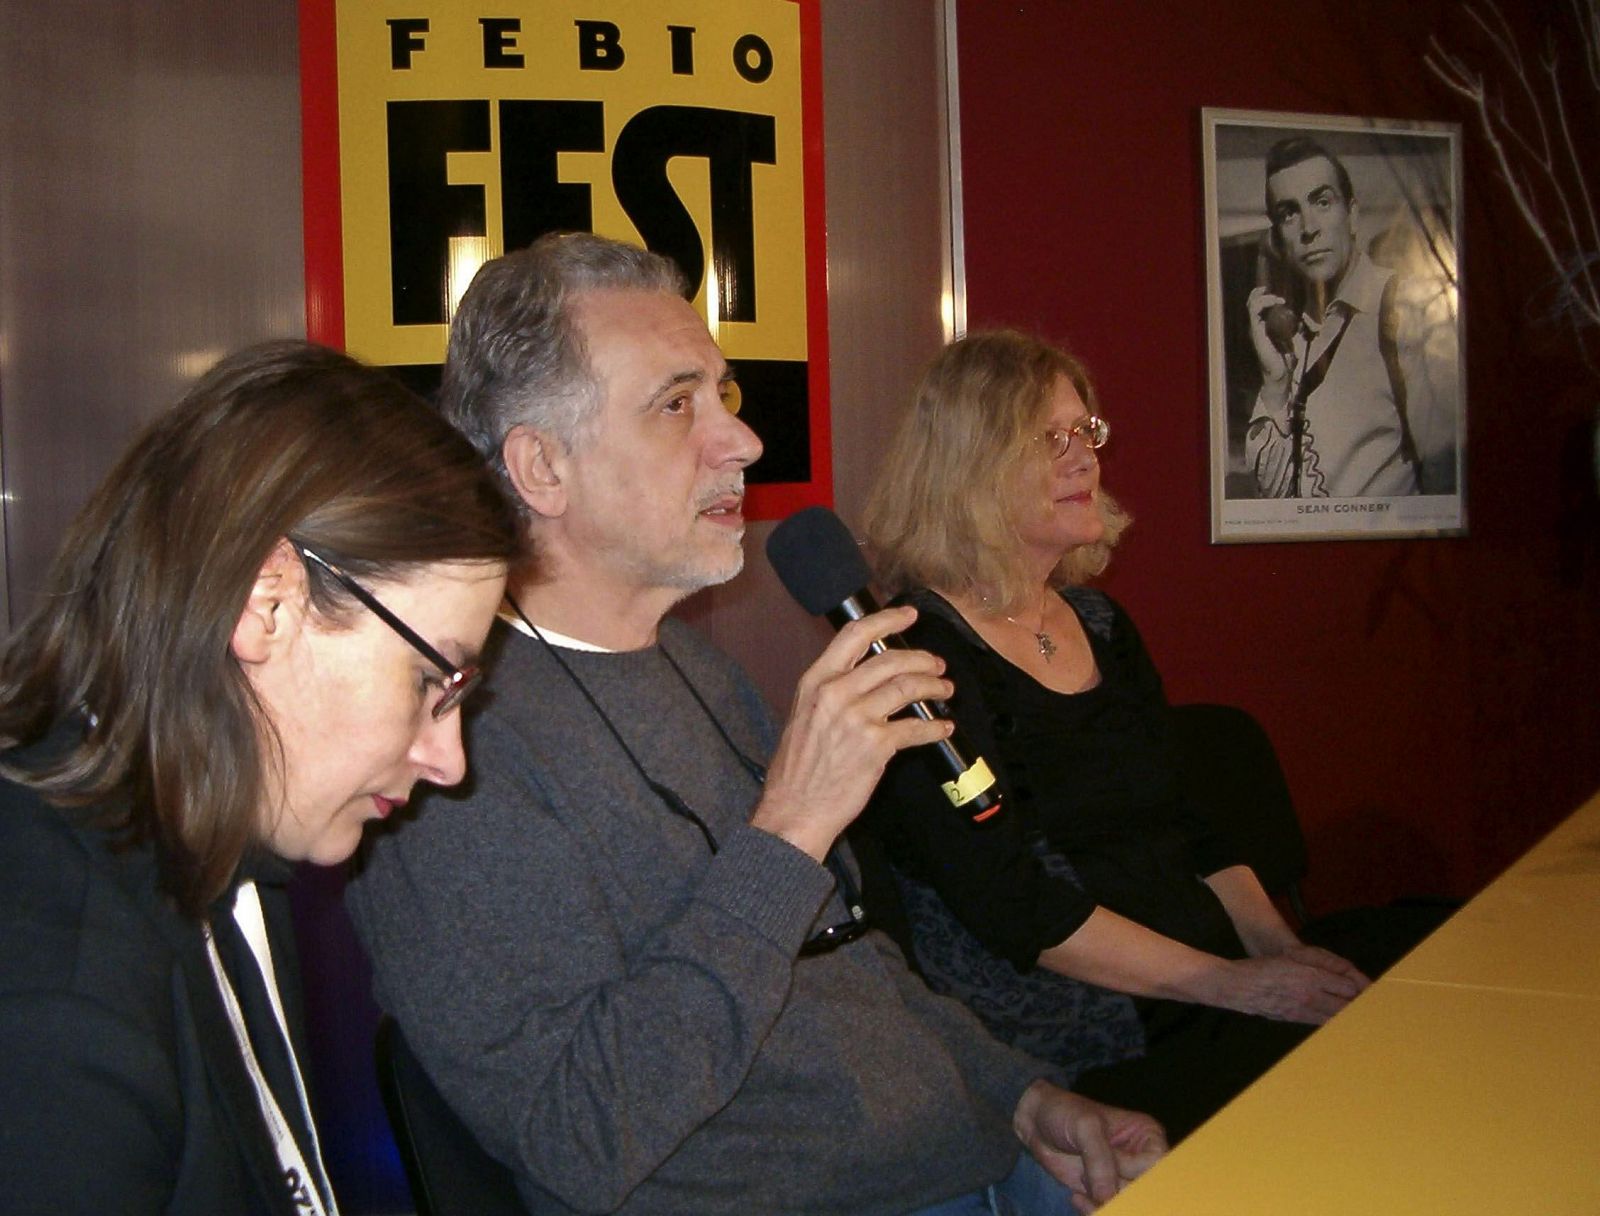 Fernando Trueba: "El cine está tomado por la imbecilidad"